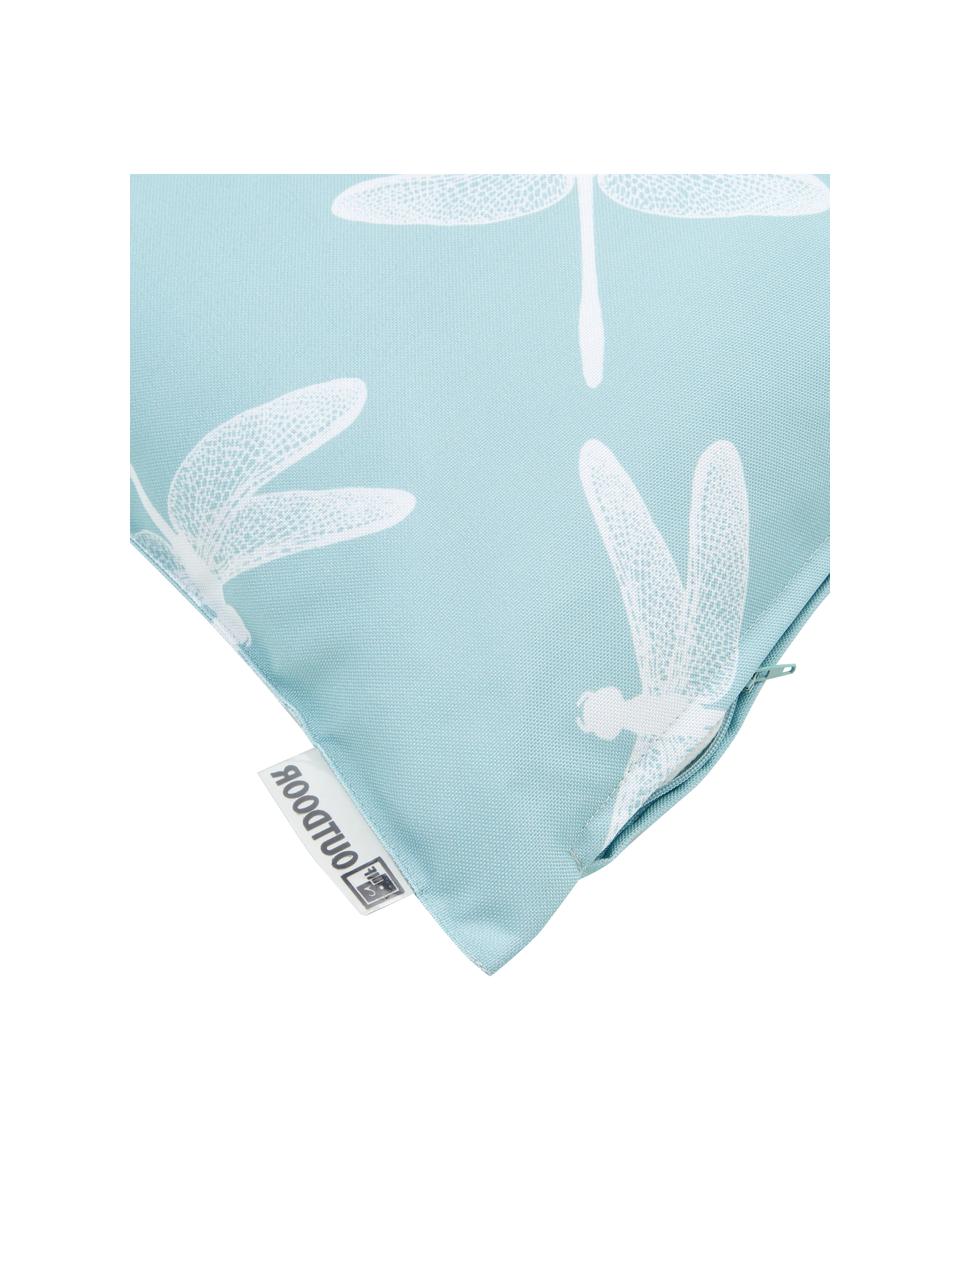 Venkovní polštář s motivy vážky Dragonfly, 100 % polyester, Modrá, bílá, Š 47 cm, D 47 cm